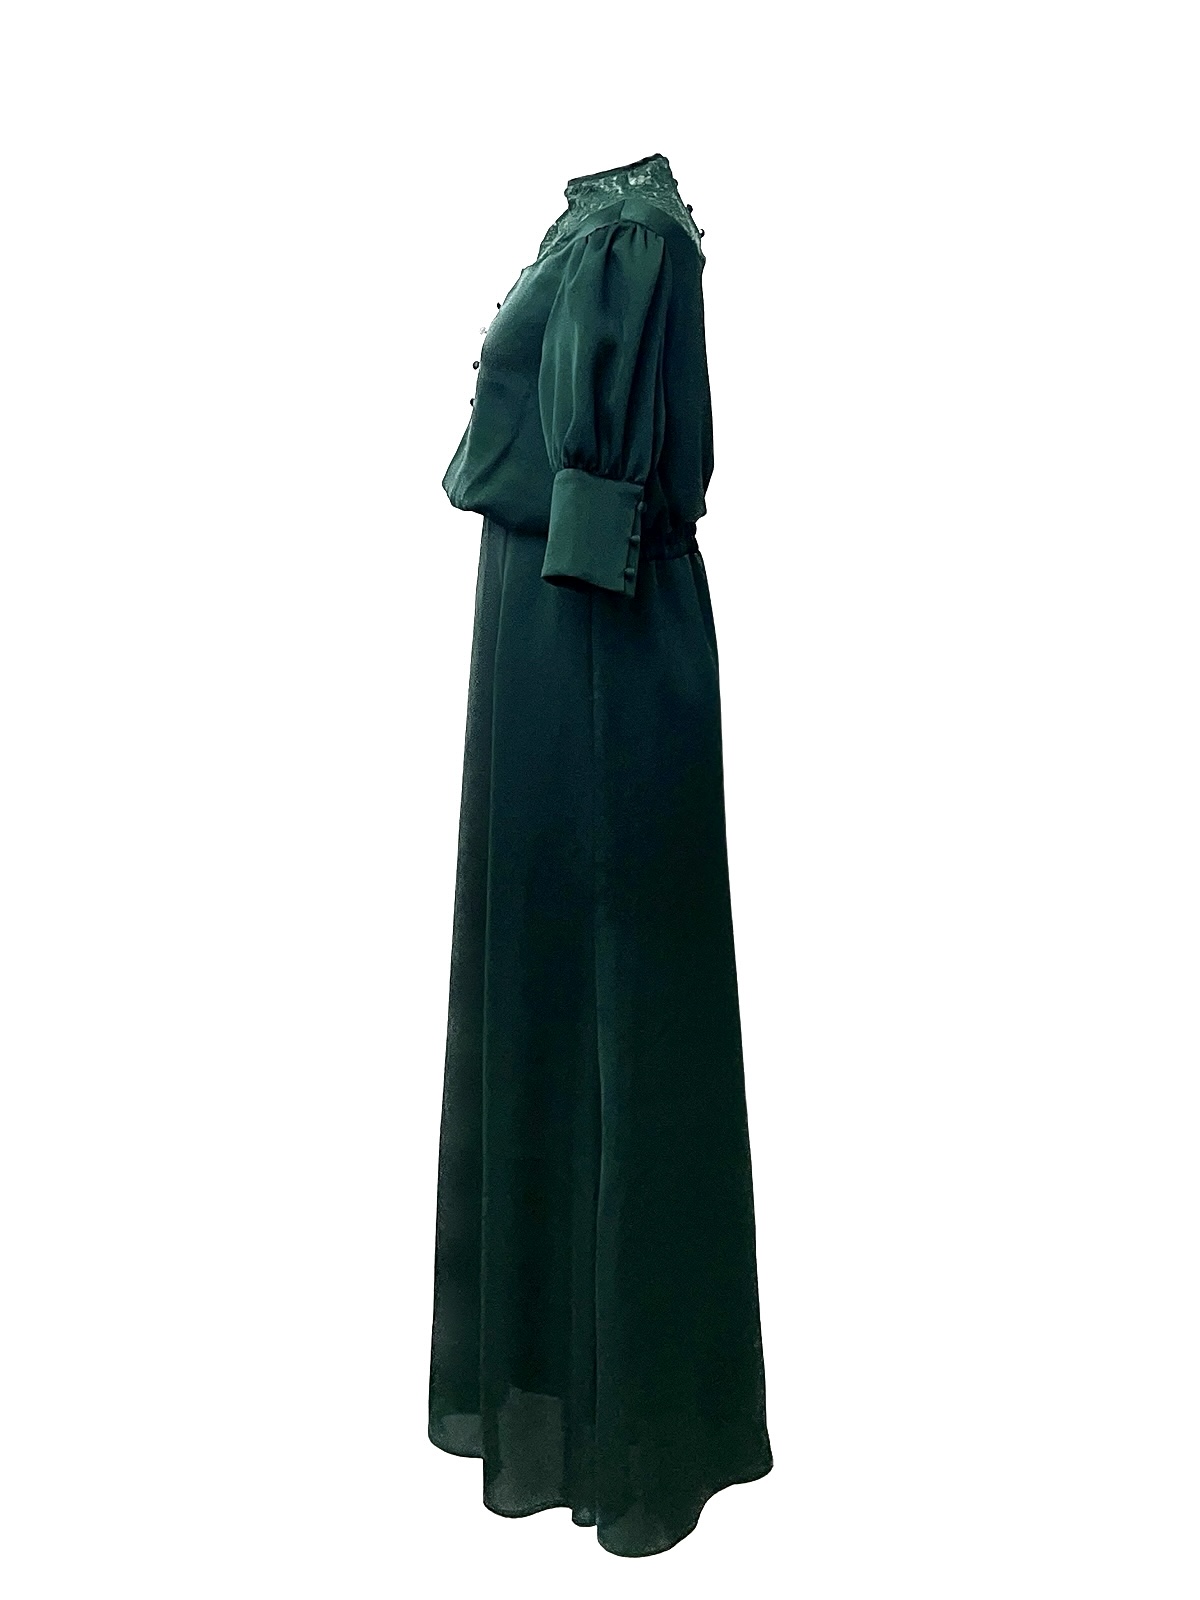 Ameri VINTAGE デコルテレースドレスのイメージ画像